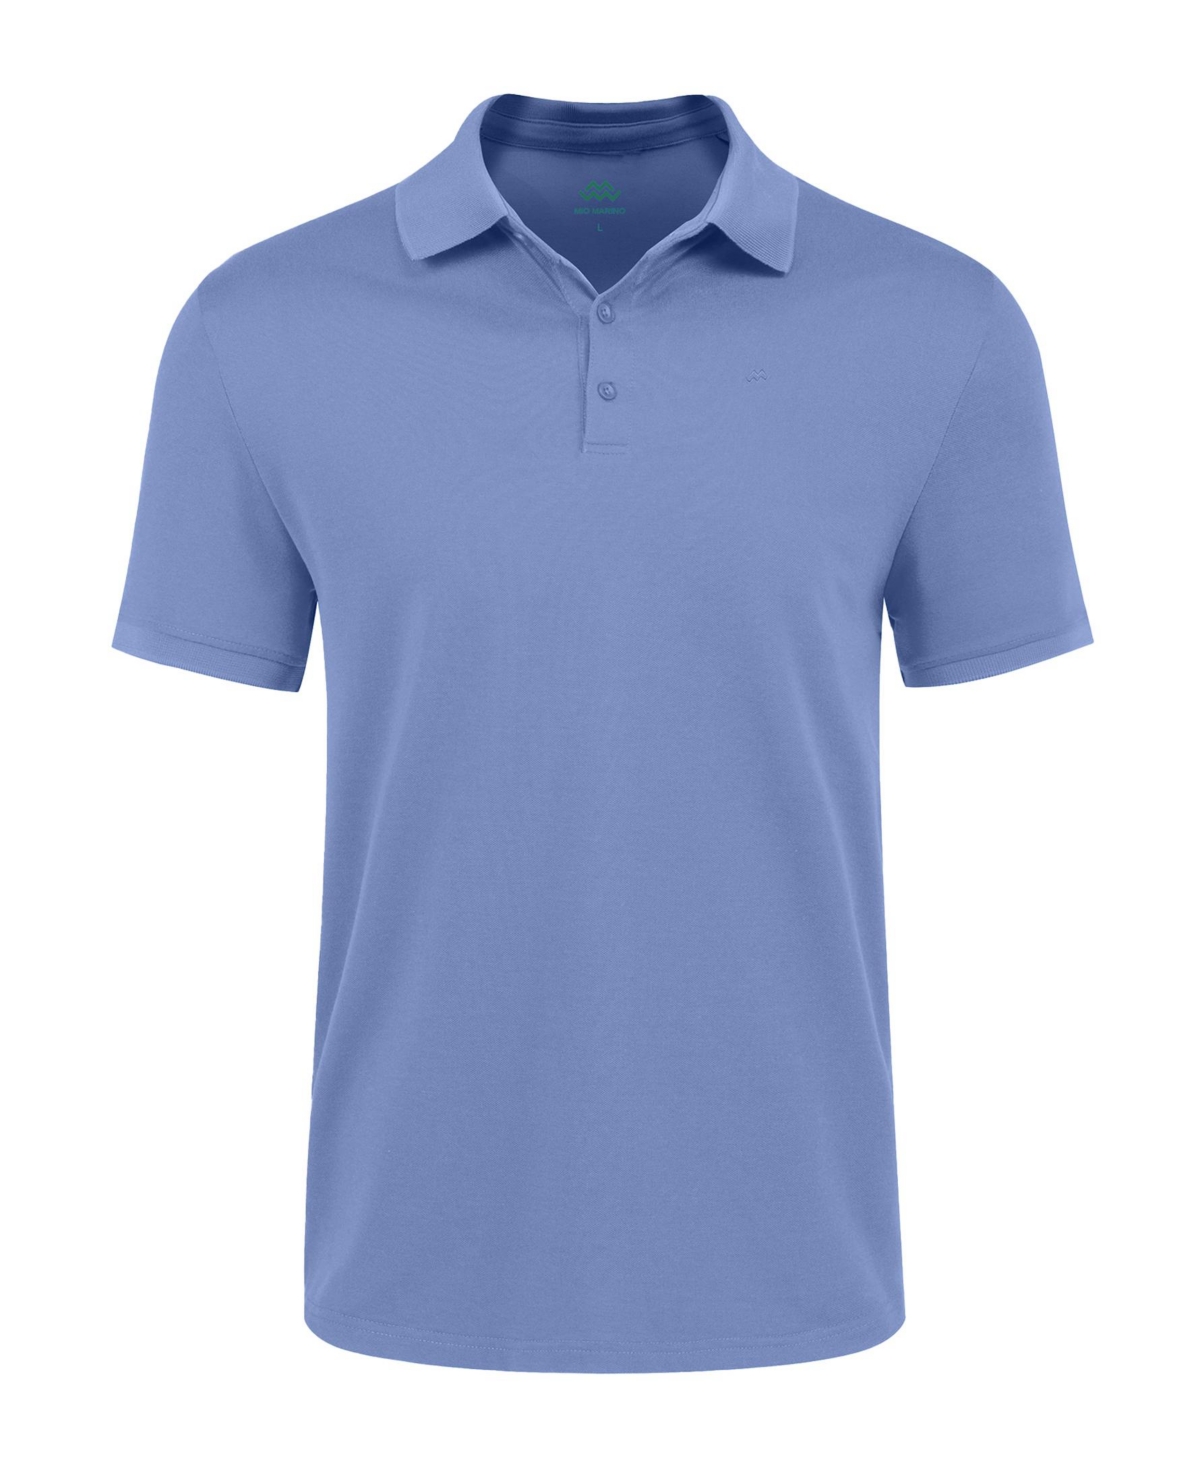 Men's Classic-Fit Cotton-Blend Pique Polo Shirt - Denim blue